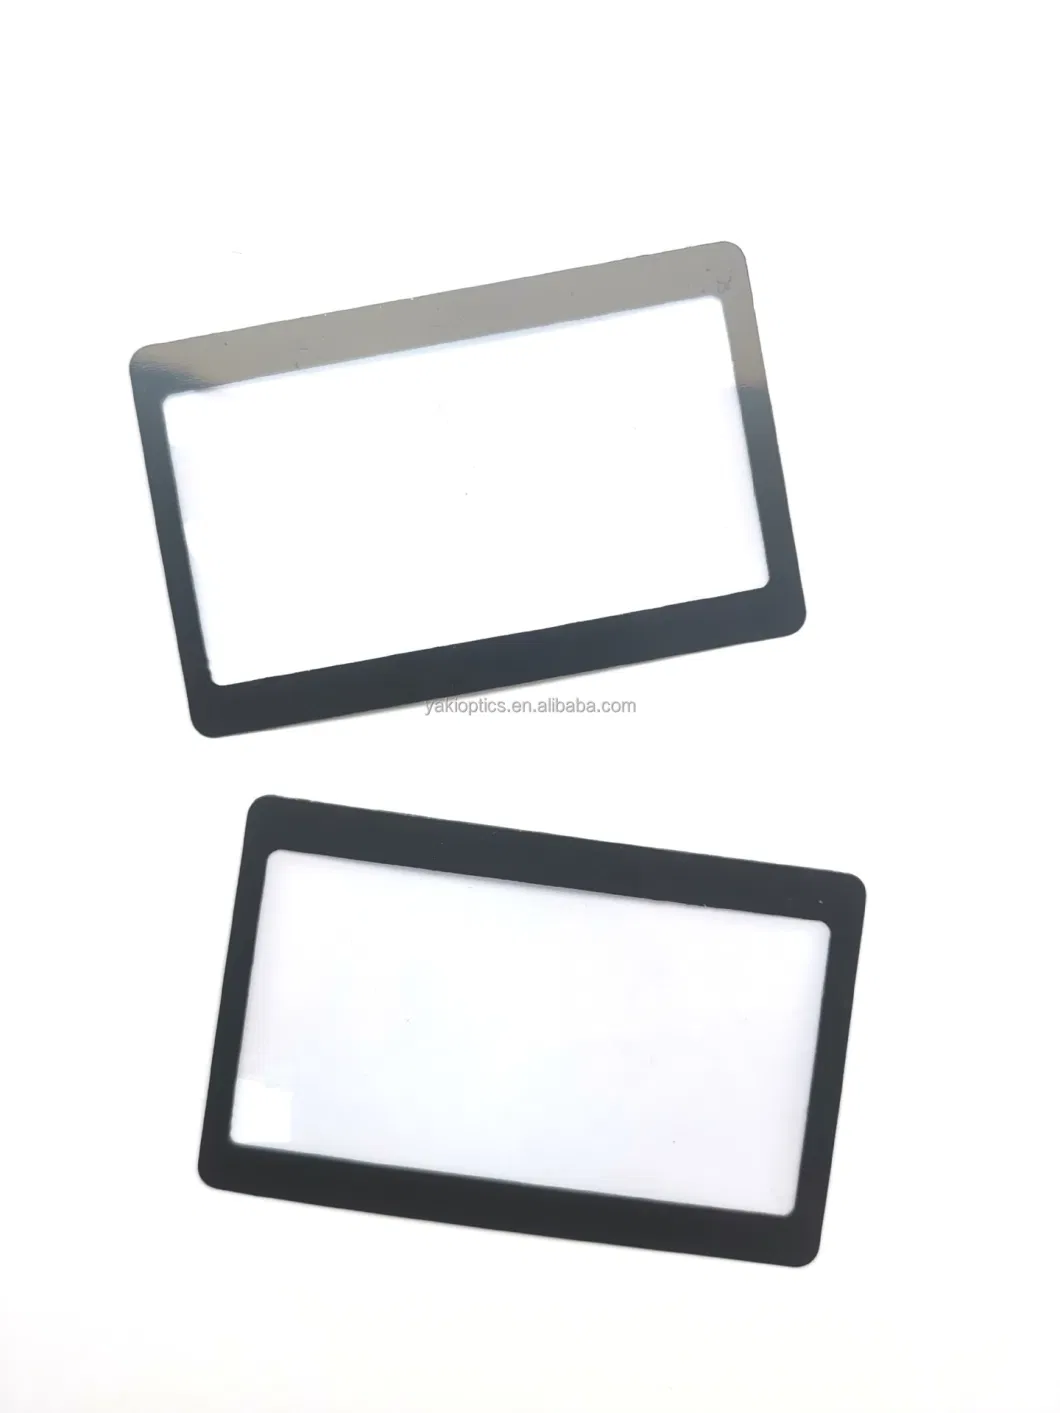 Fresnel Lens Pocket Wallet Credit Card Magnifier &Solar Fire Starter